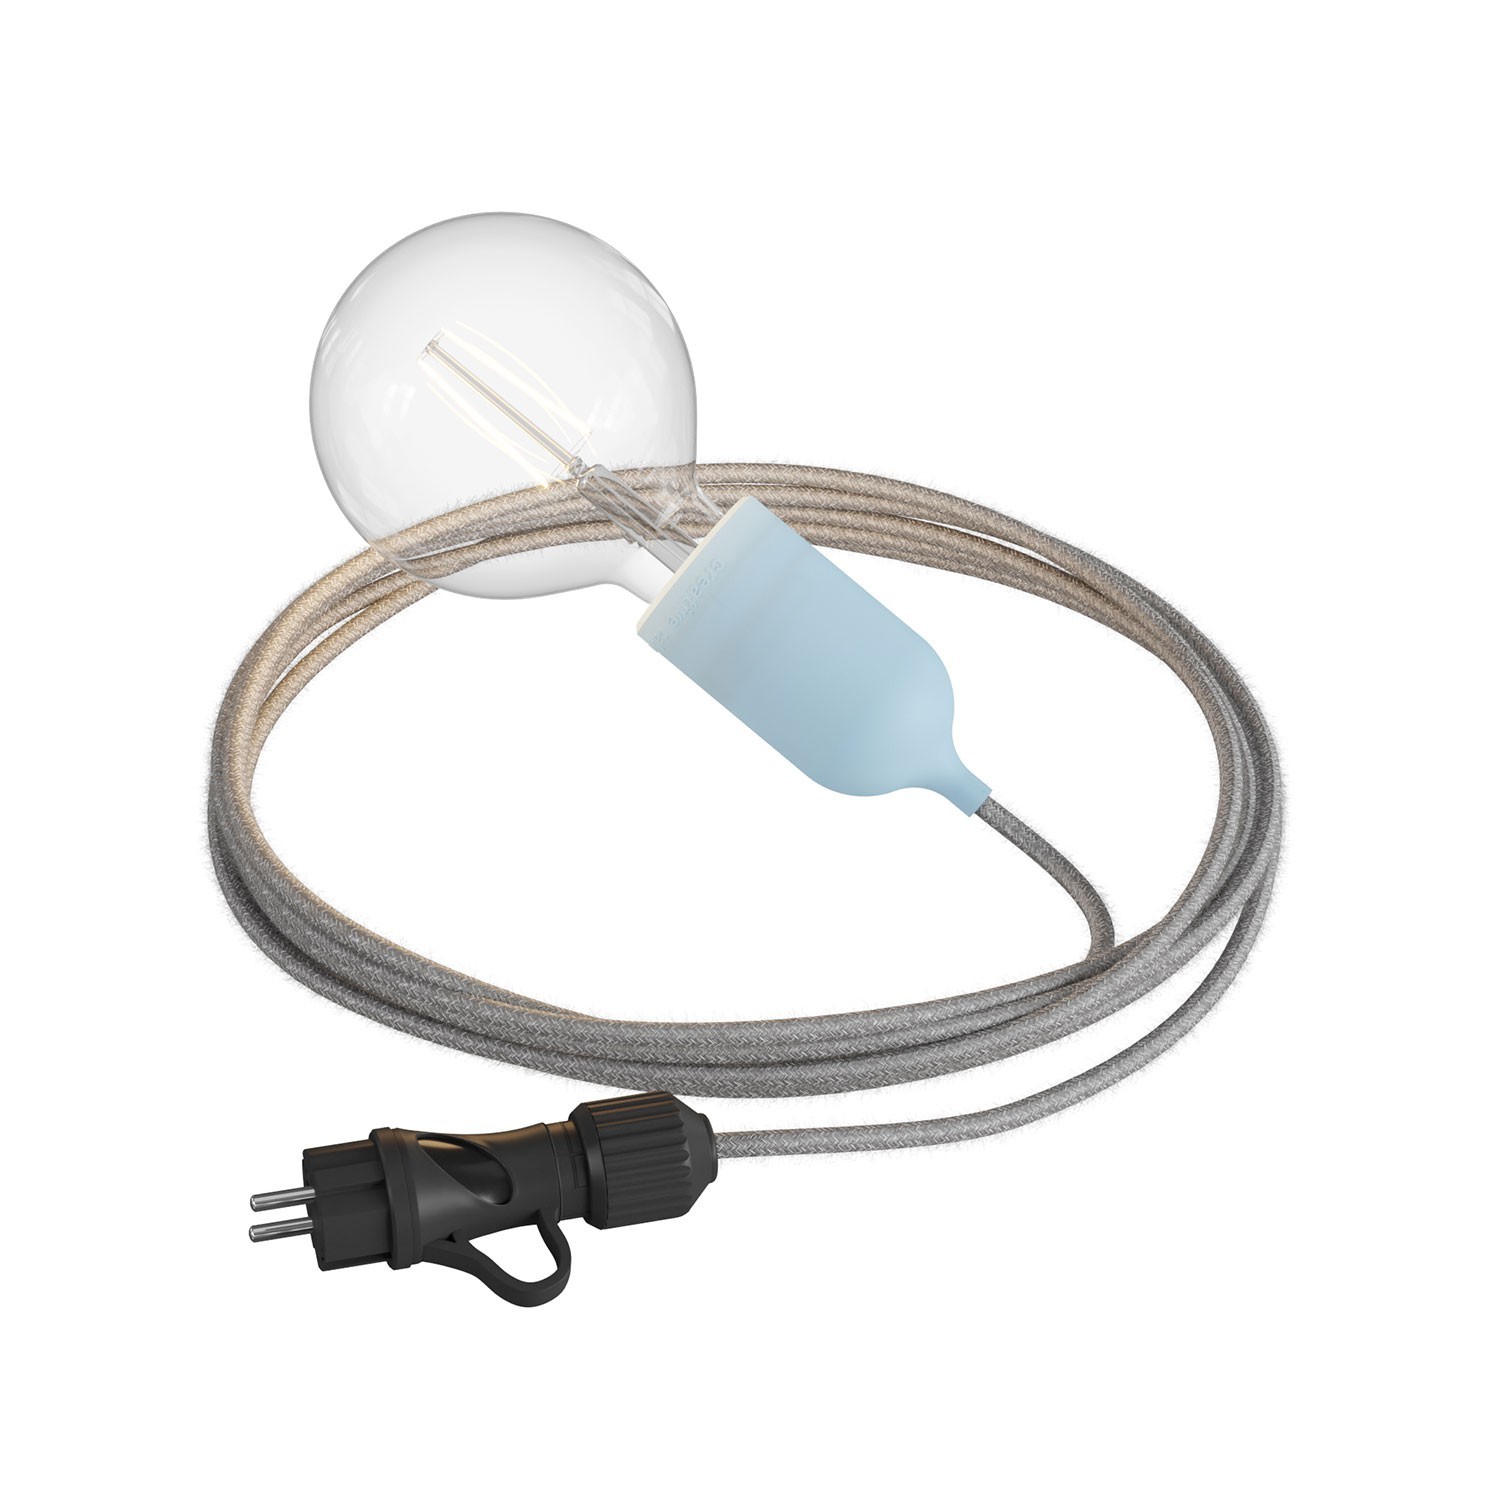 Eiva Snake Pastel, portabel utomhuslampa, 5 m textilkabel, IP65 vattentät lamphållare och kontakt